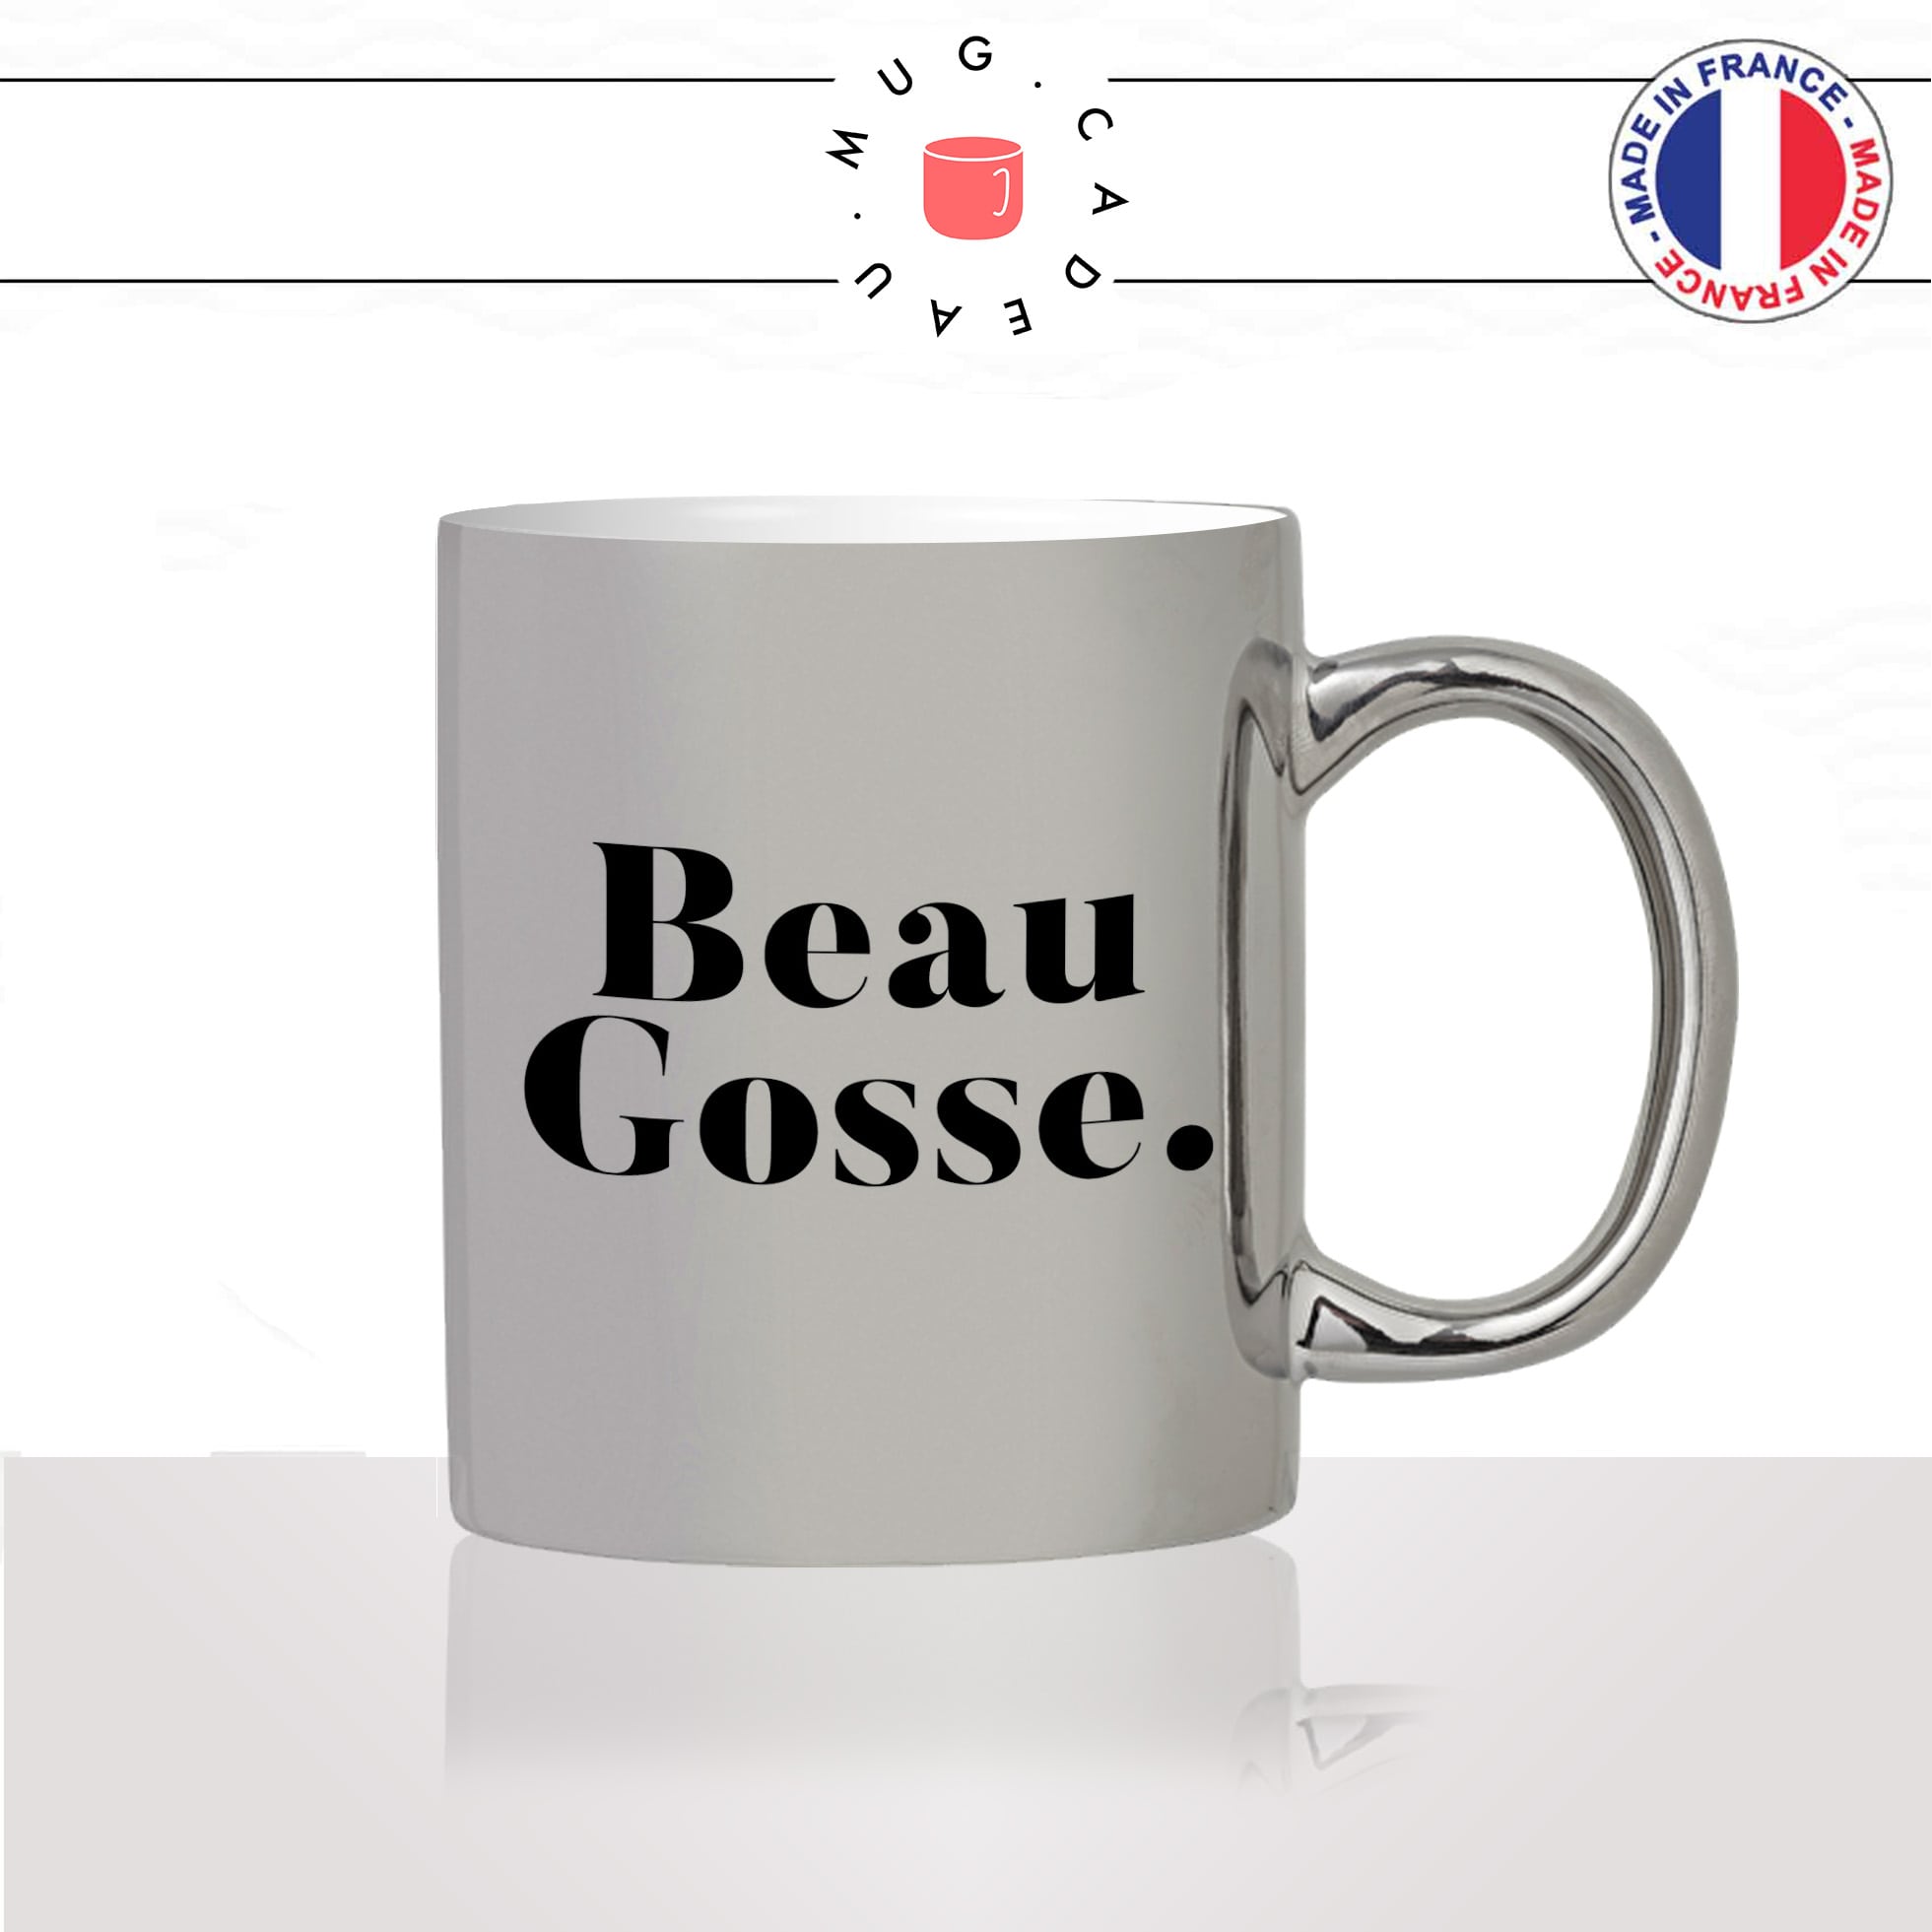 mug-tasse-argenté-silver-beau-gosse-homme-mec-couple-st-valentin-je-taime-amour-couple-café-thé-idée-cadeau-original-personnalisé2-min